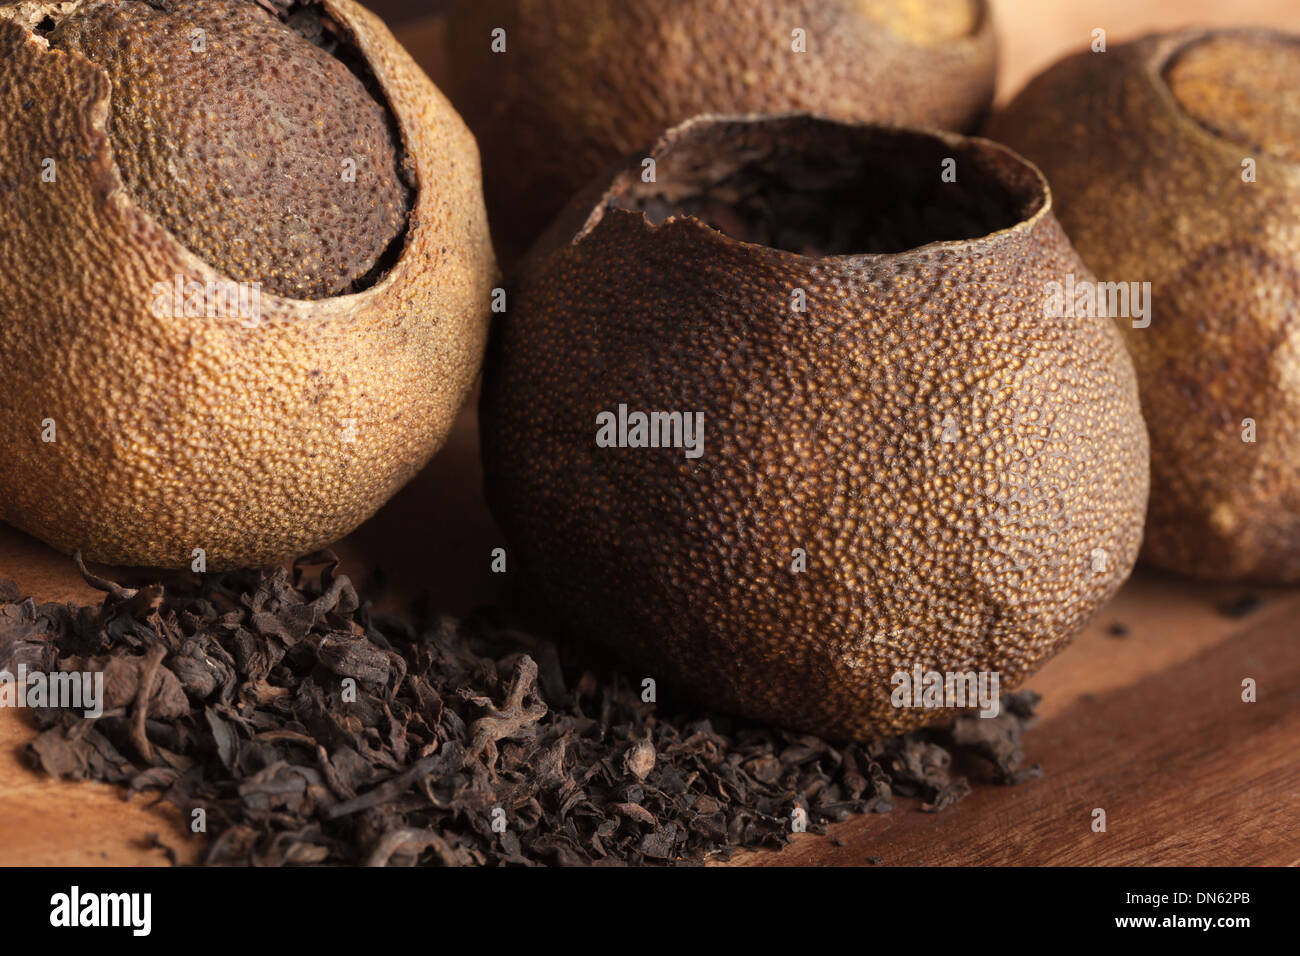 Pu-erh. Chinese dark tea packed in dried mandarins Stock Photo